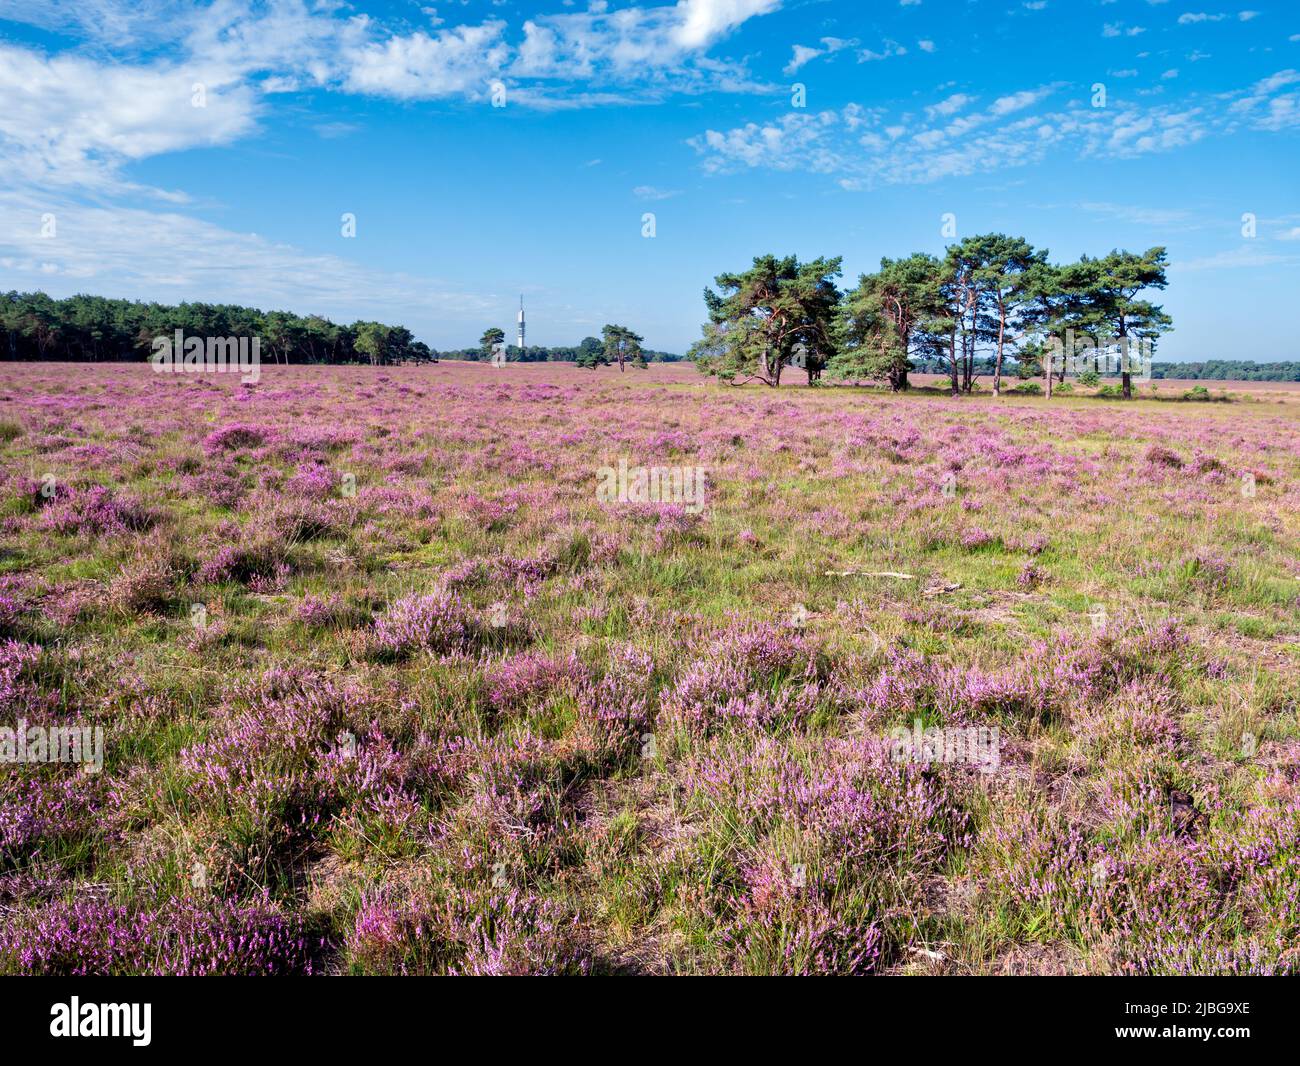 Campo de Heather en flor en el área de la brea de Westerheide en Gooi cerca de Hilversum, Holanda Foto de stock